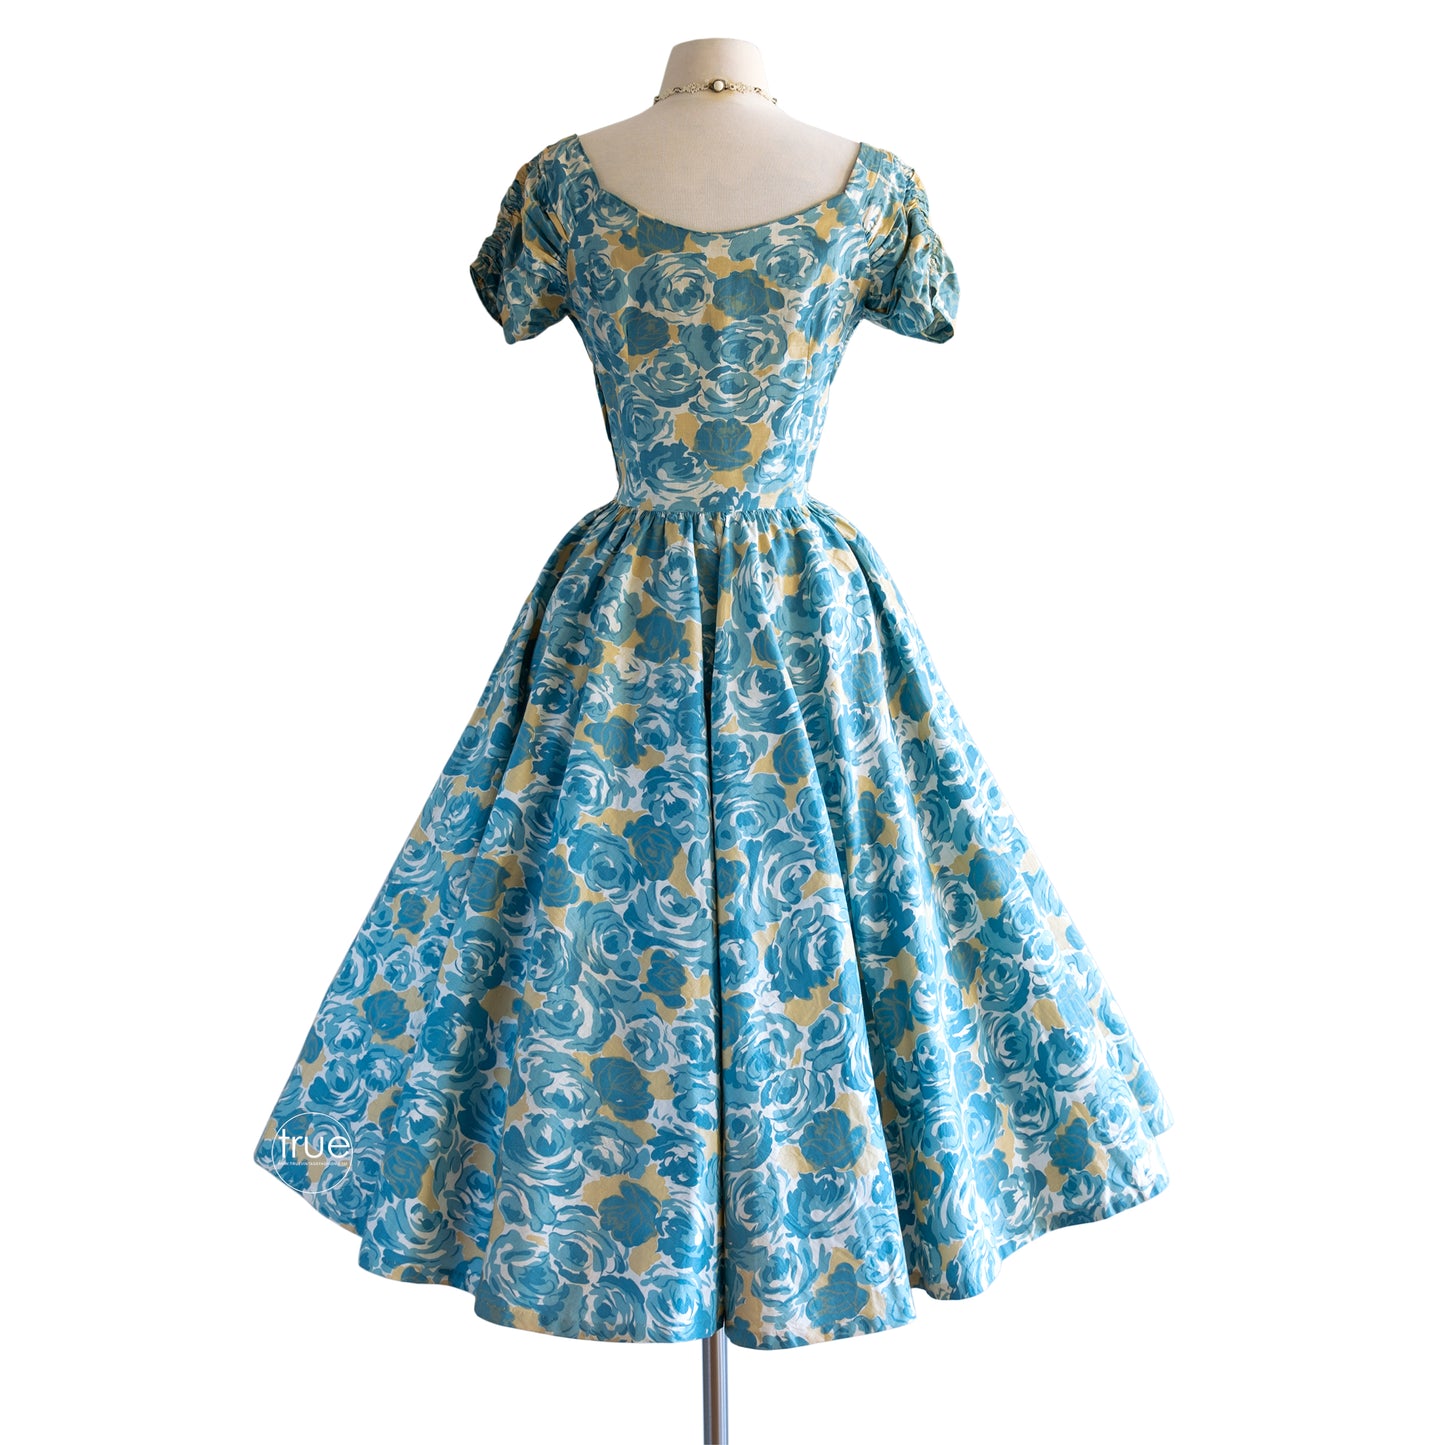 vintage 1950's dress ...classic JERRY GILDEN blue rose floral cotton dress